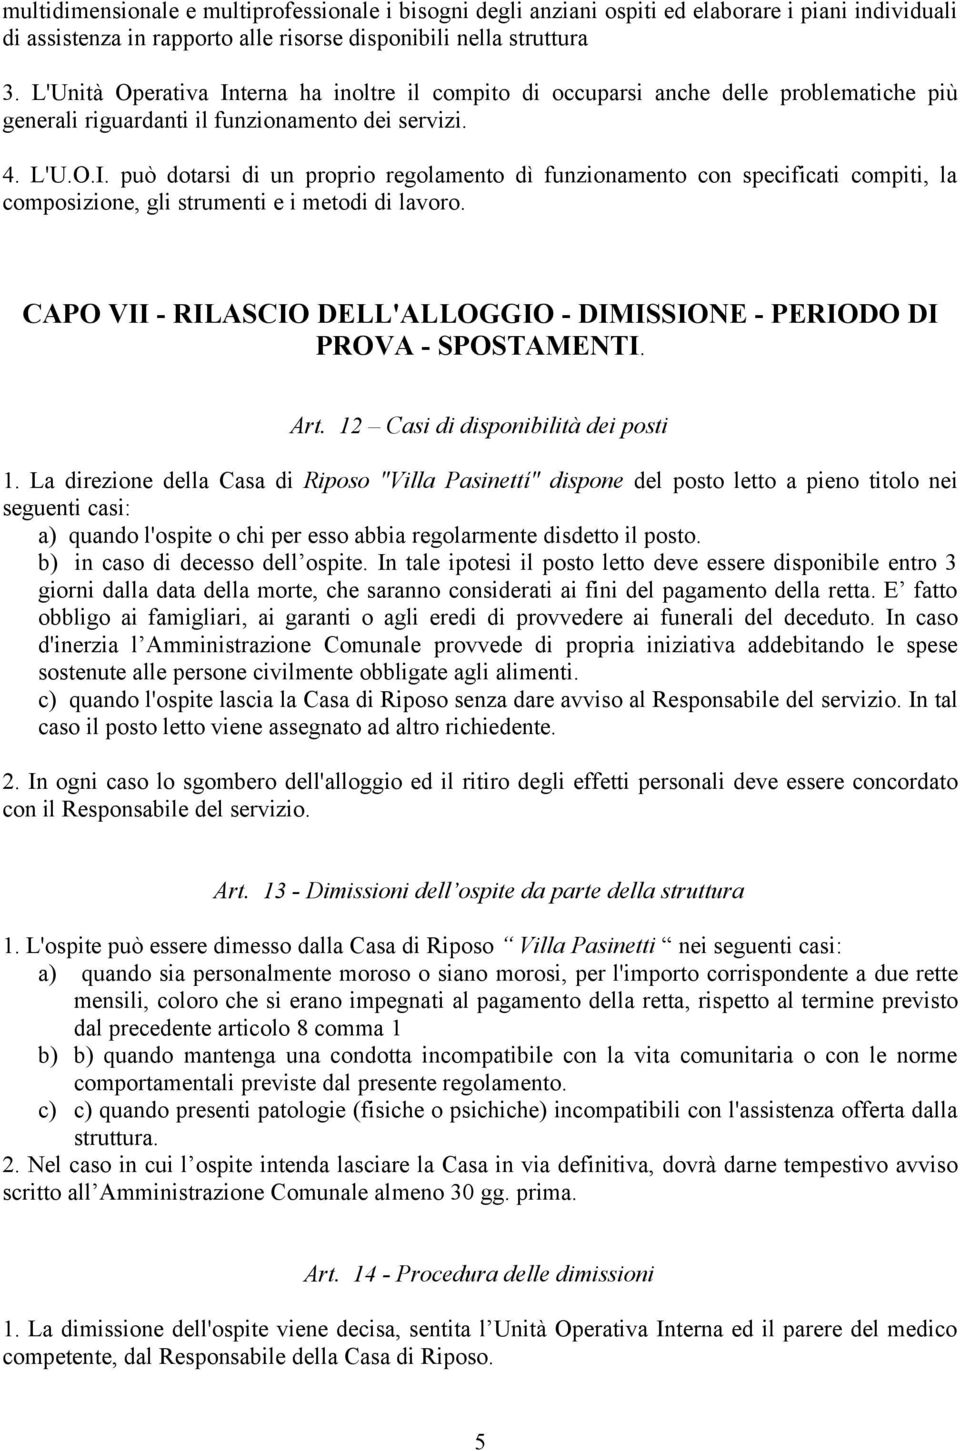 CAPO VII - RILASCIO DELL'ALLOGGIO - DIMISSIONE - PERIODO DI PROVA - SPOSTAMENTI. Art. 12 Casi di disponibilità dei posti 1.